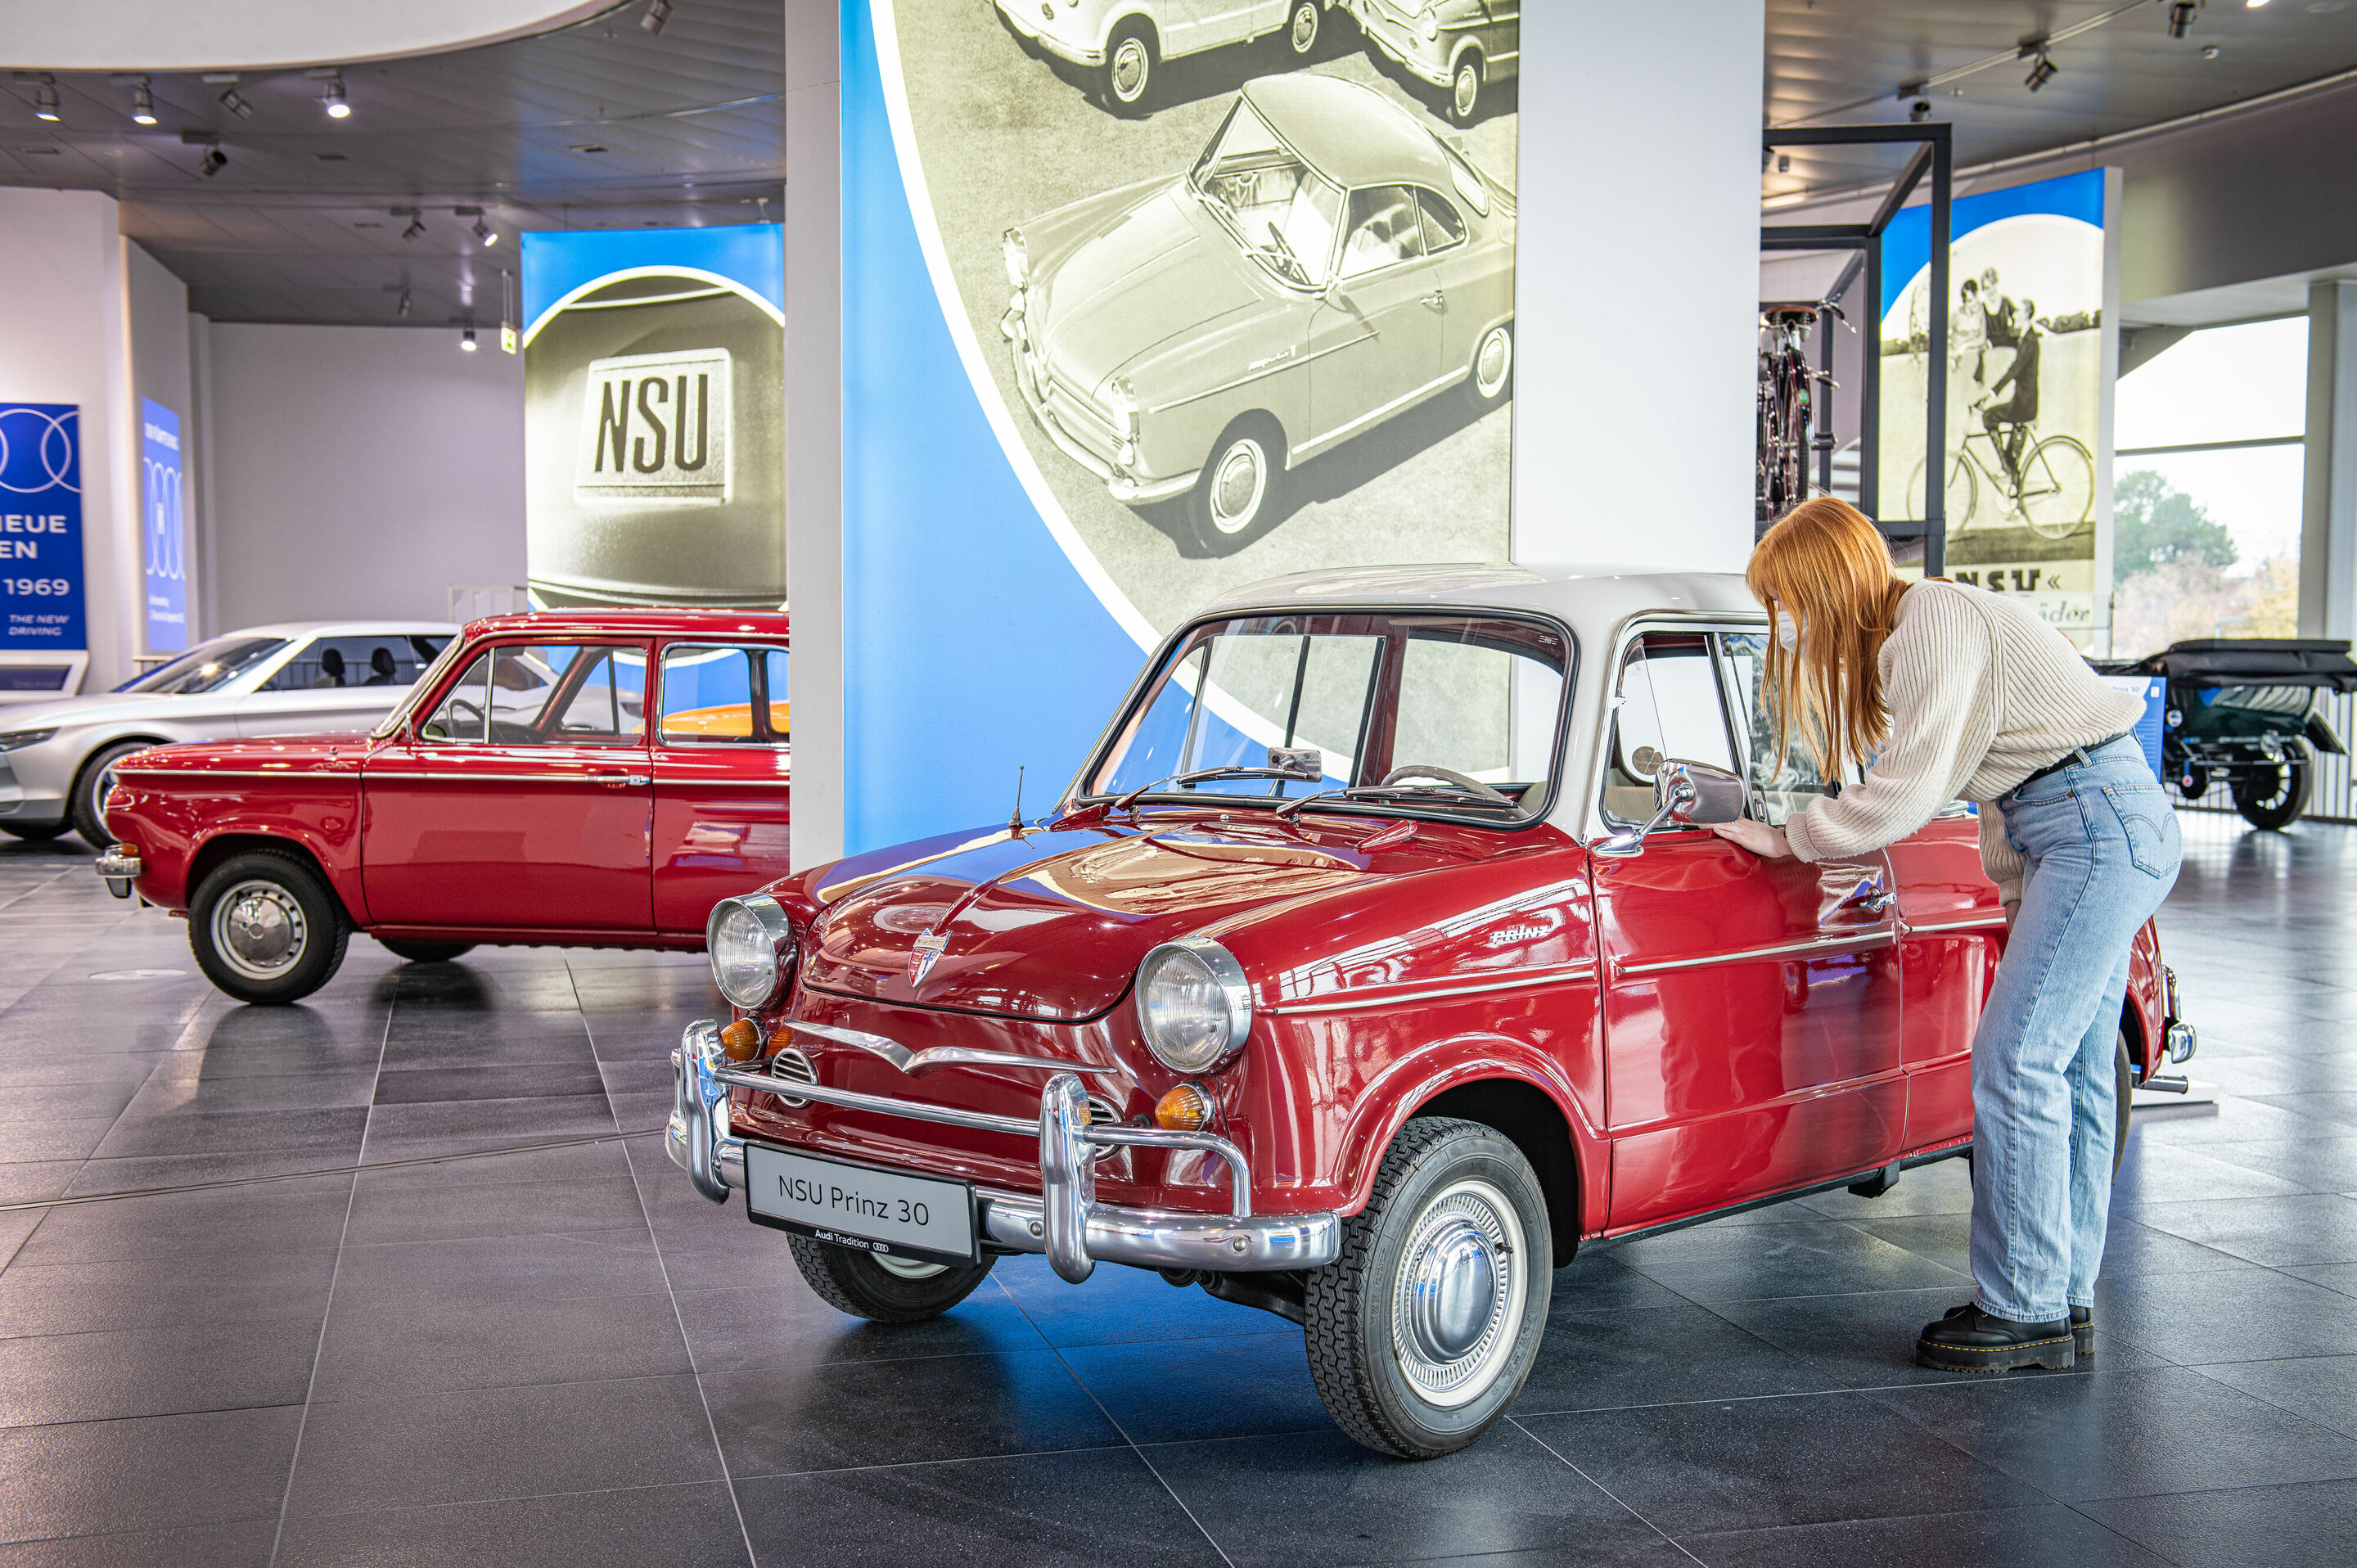 App ins Museum: Audi Tradition goes digital mit neuer Sonderausstellung „Der fünfte Ring“